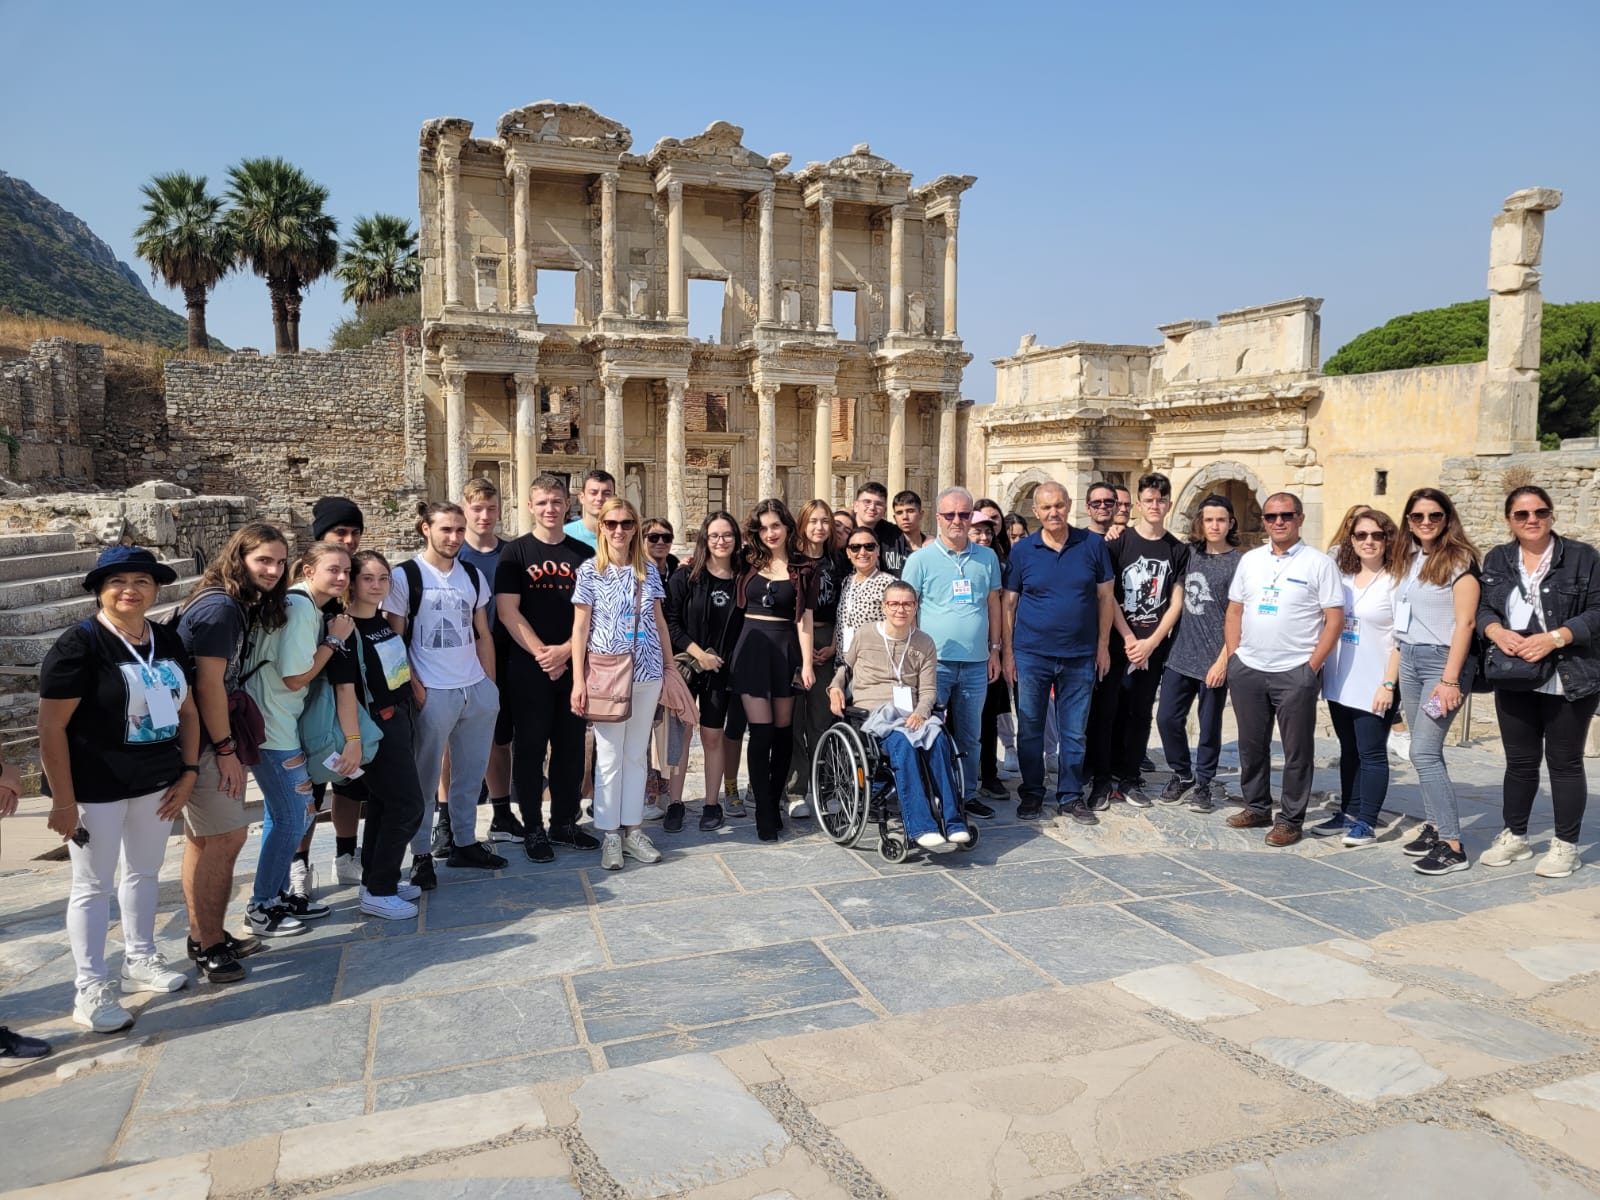 Σε πέντε διασχολικές συναντήσεις Erasmus στο εξωτερικό, συμμετείχαν μαθητές και εκπαιδευτικοί του Μουσικού Σχολείου Κομοτηνής στη λήξη του 2022